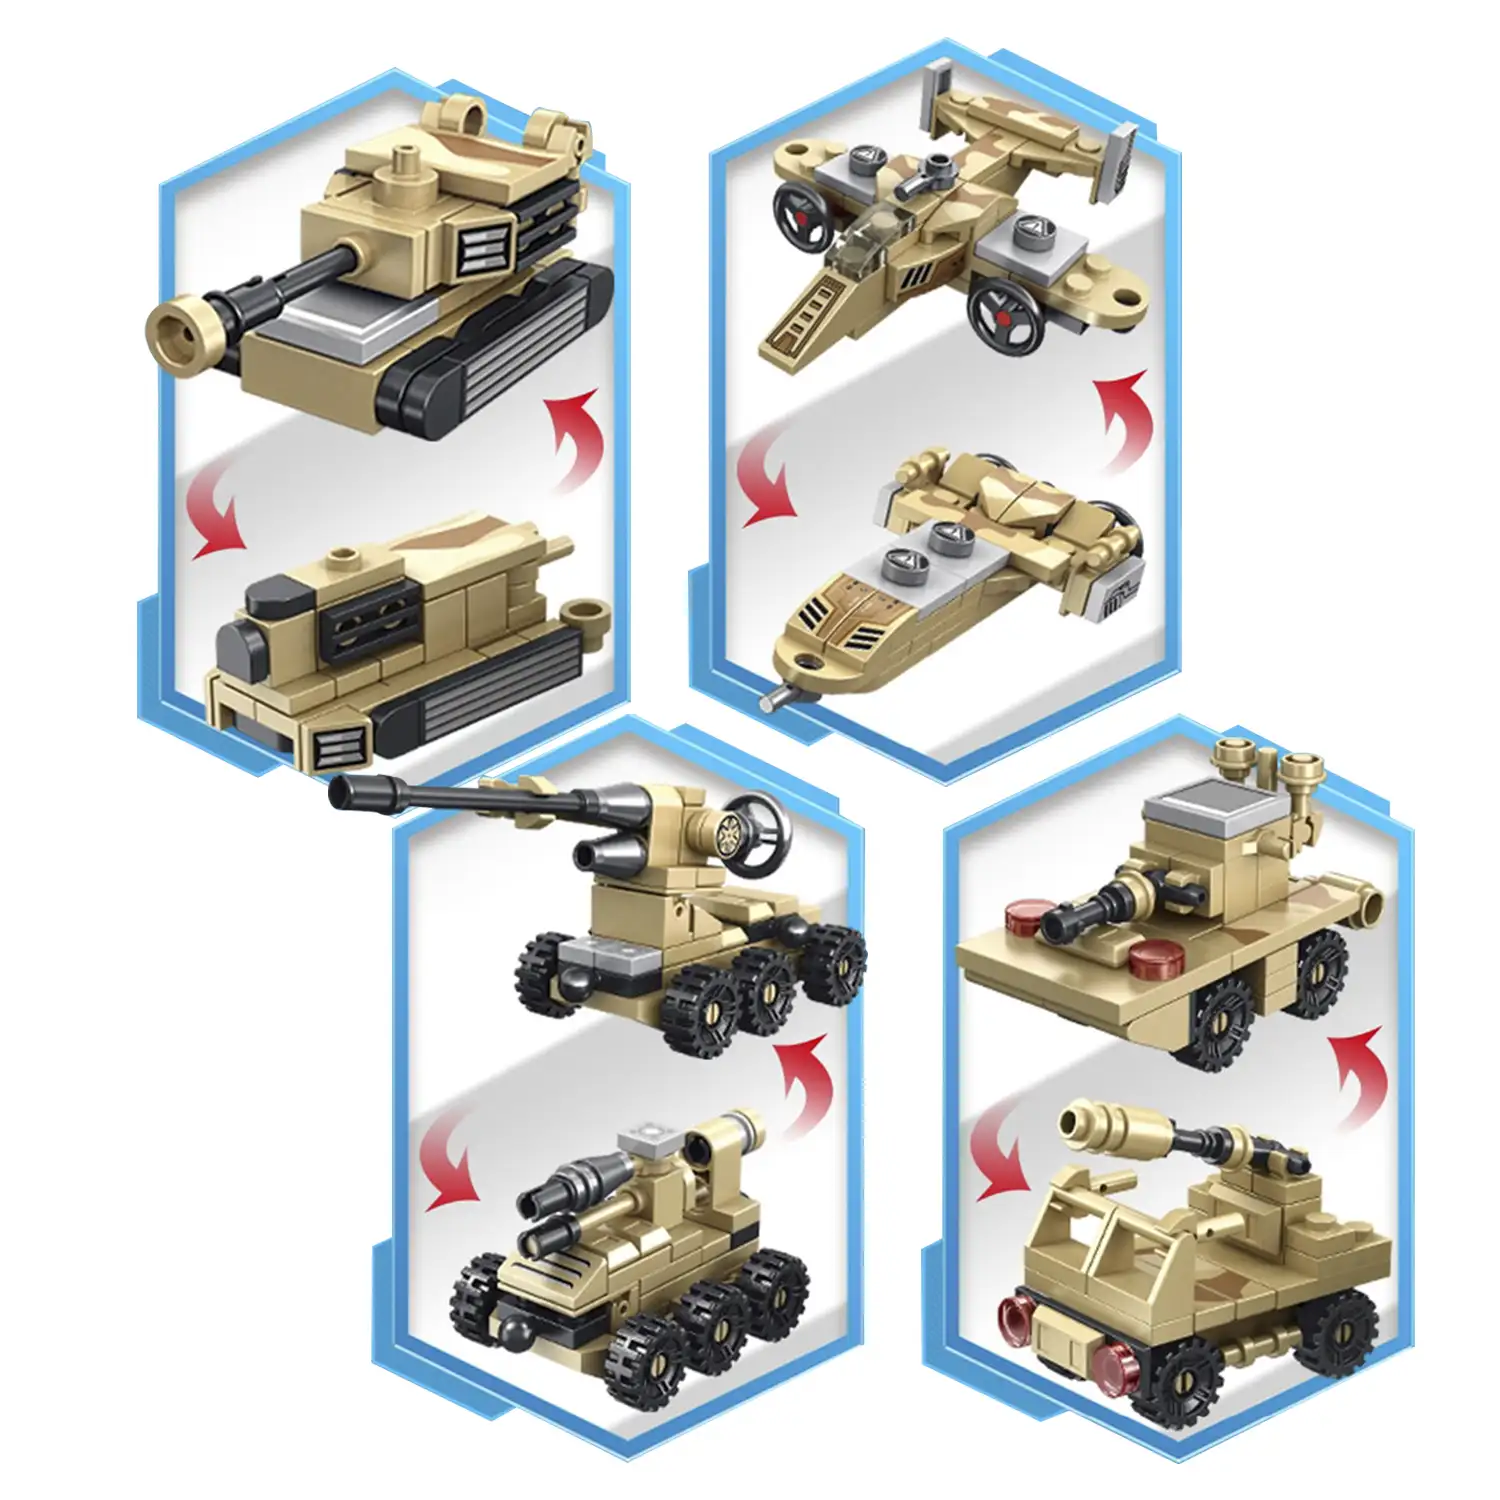 Robot 8 en 1 y vehículo militar 2 formas, cada modelo 2 formas 385 piezas